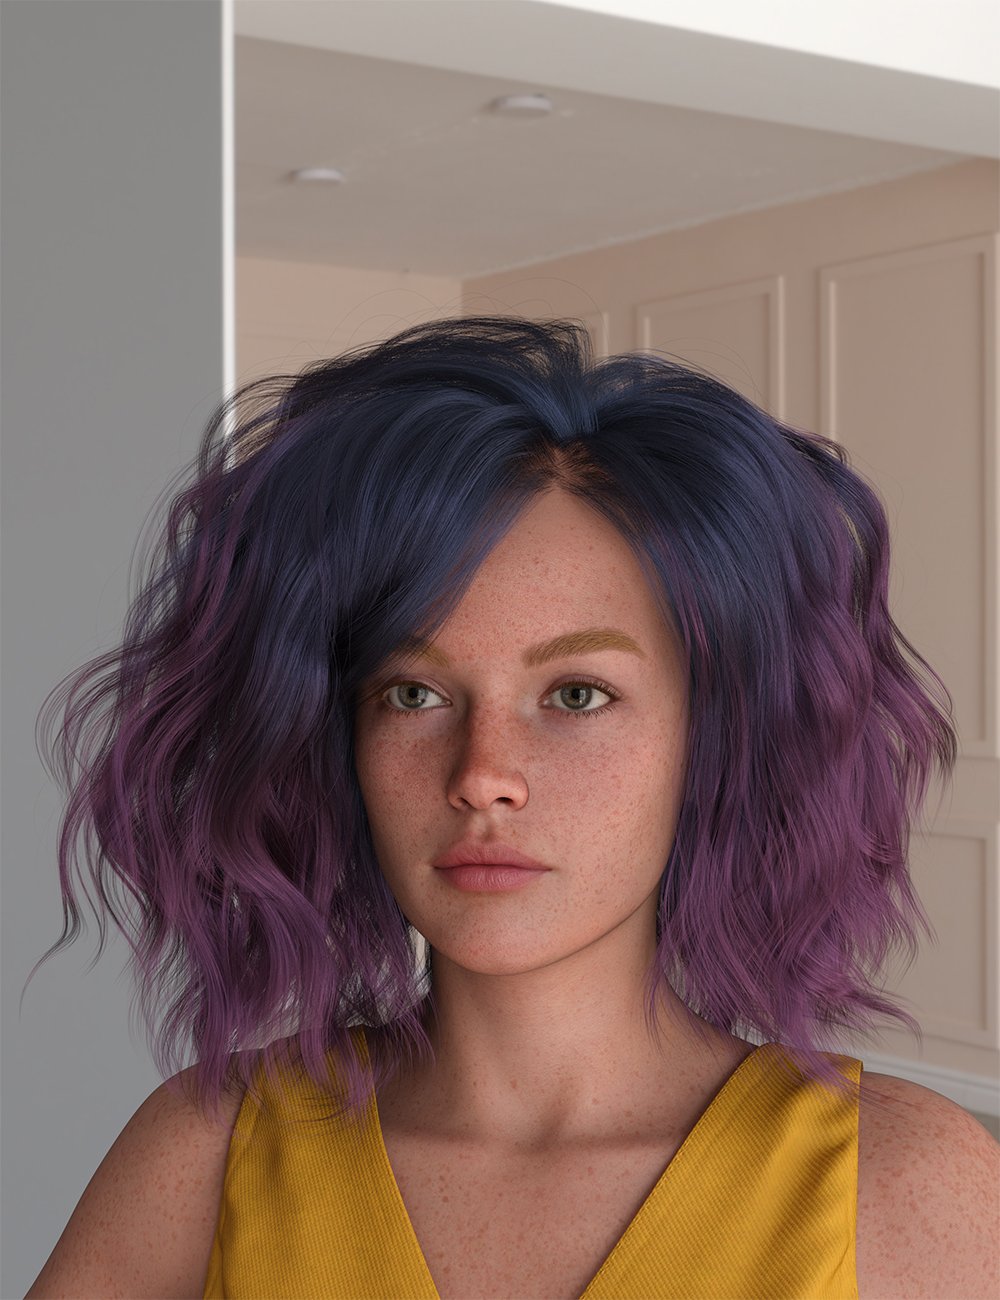 dForce XYZ Realistic Short Messy Hair for Genesis 9 by: XYZArt Ken, 3D Models by Daz 3D